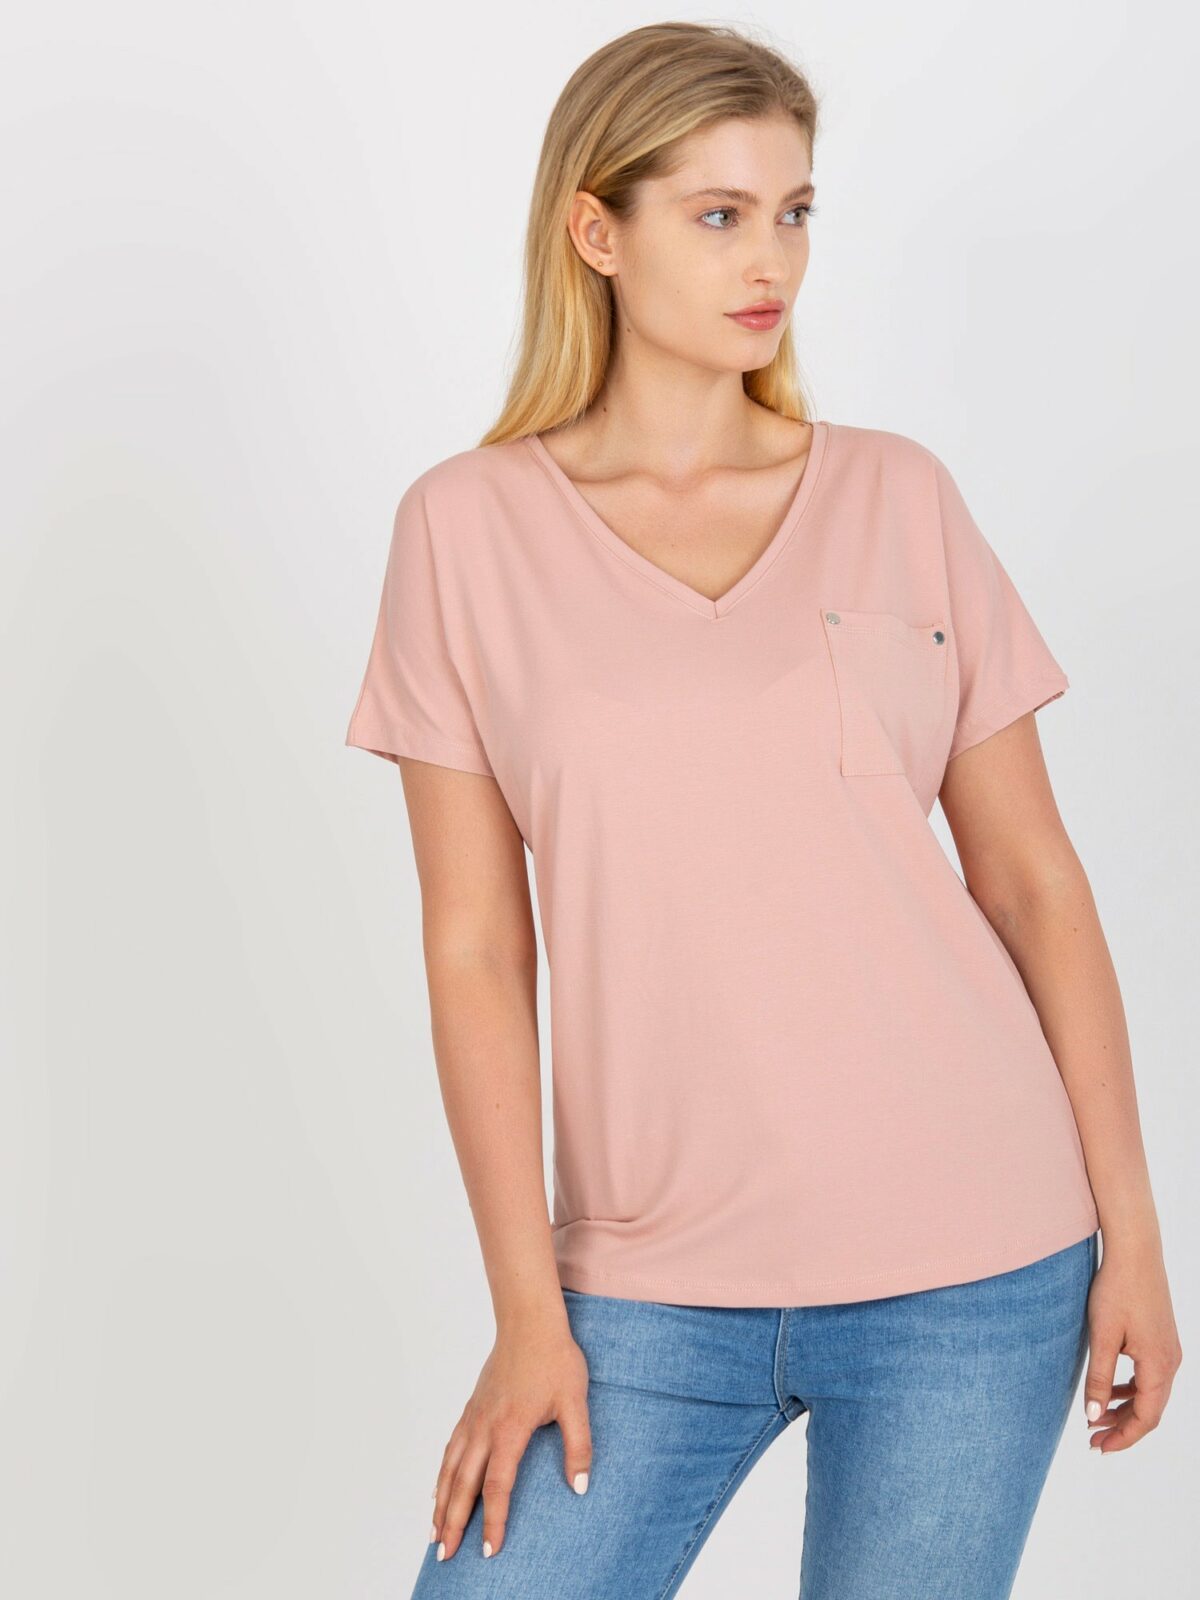 Prašně růžové tričko plus velikosti s